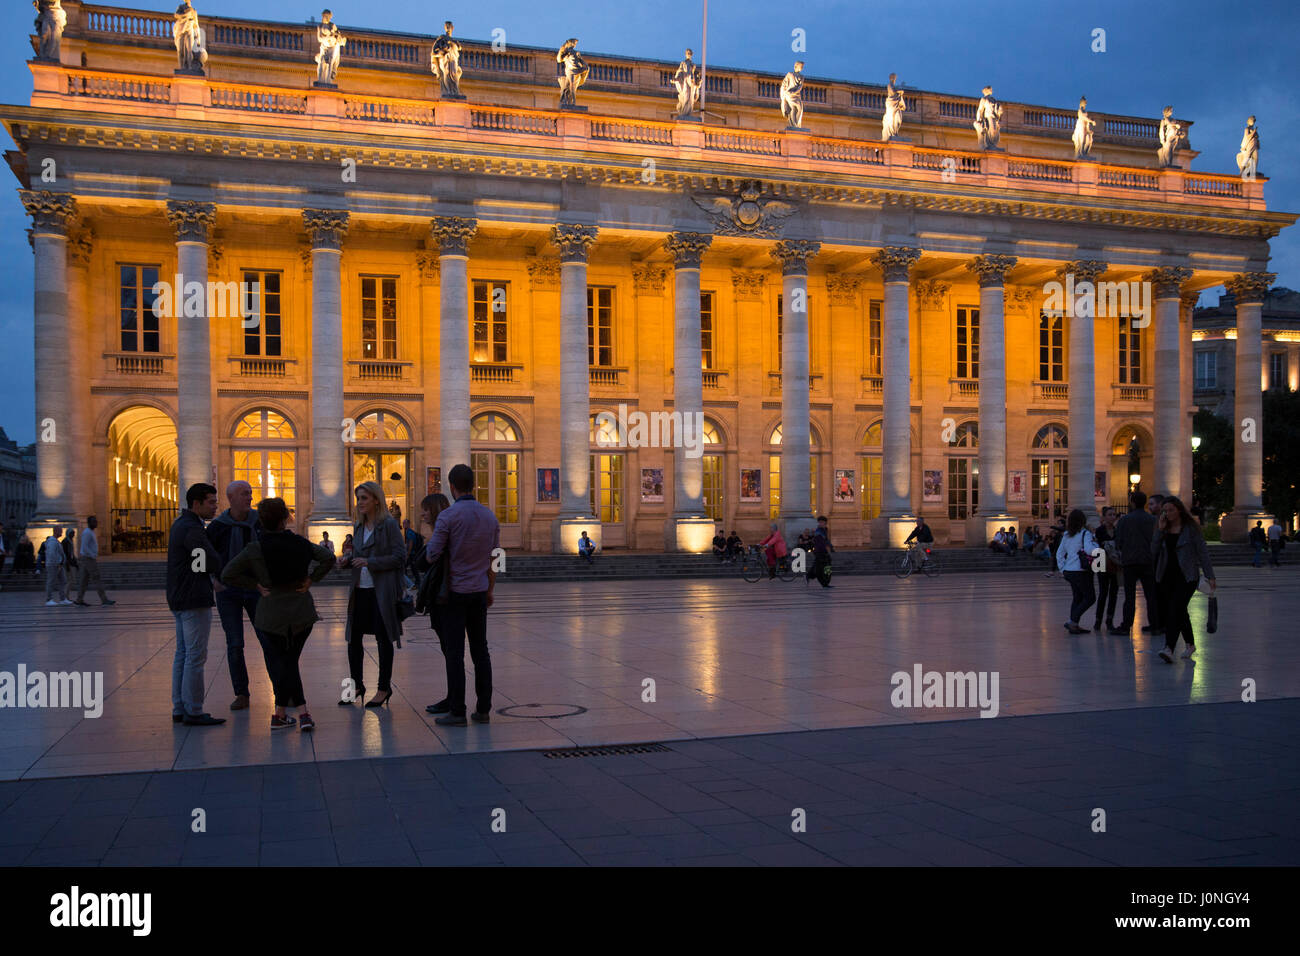 People in front of the Grand Theatre - Opera National de Bordeaux, Place de la Comedie, Bordeaux, France Stock Photo